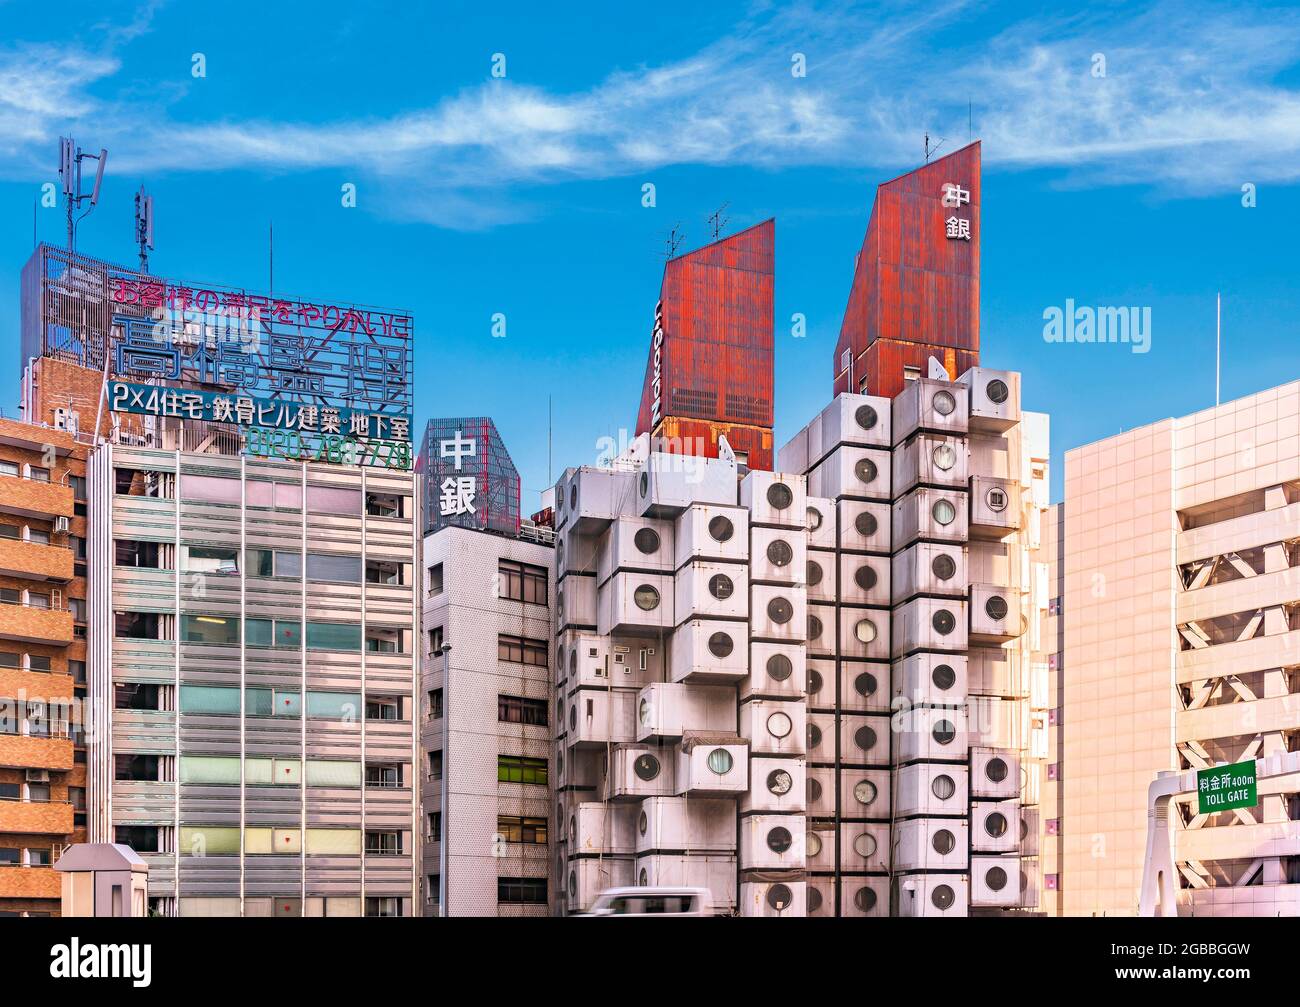 tokio, japan - juli 25 2021: Fassade von Gebäuden mit dem verrosteten Wellblechdach des legendären Nakagin Capsule Tower-Gebäudes, das 1972 von geschaffen wurde Stockfoto